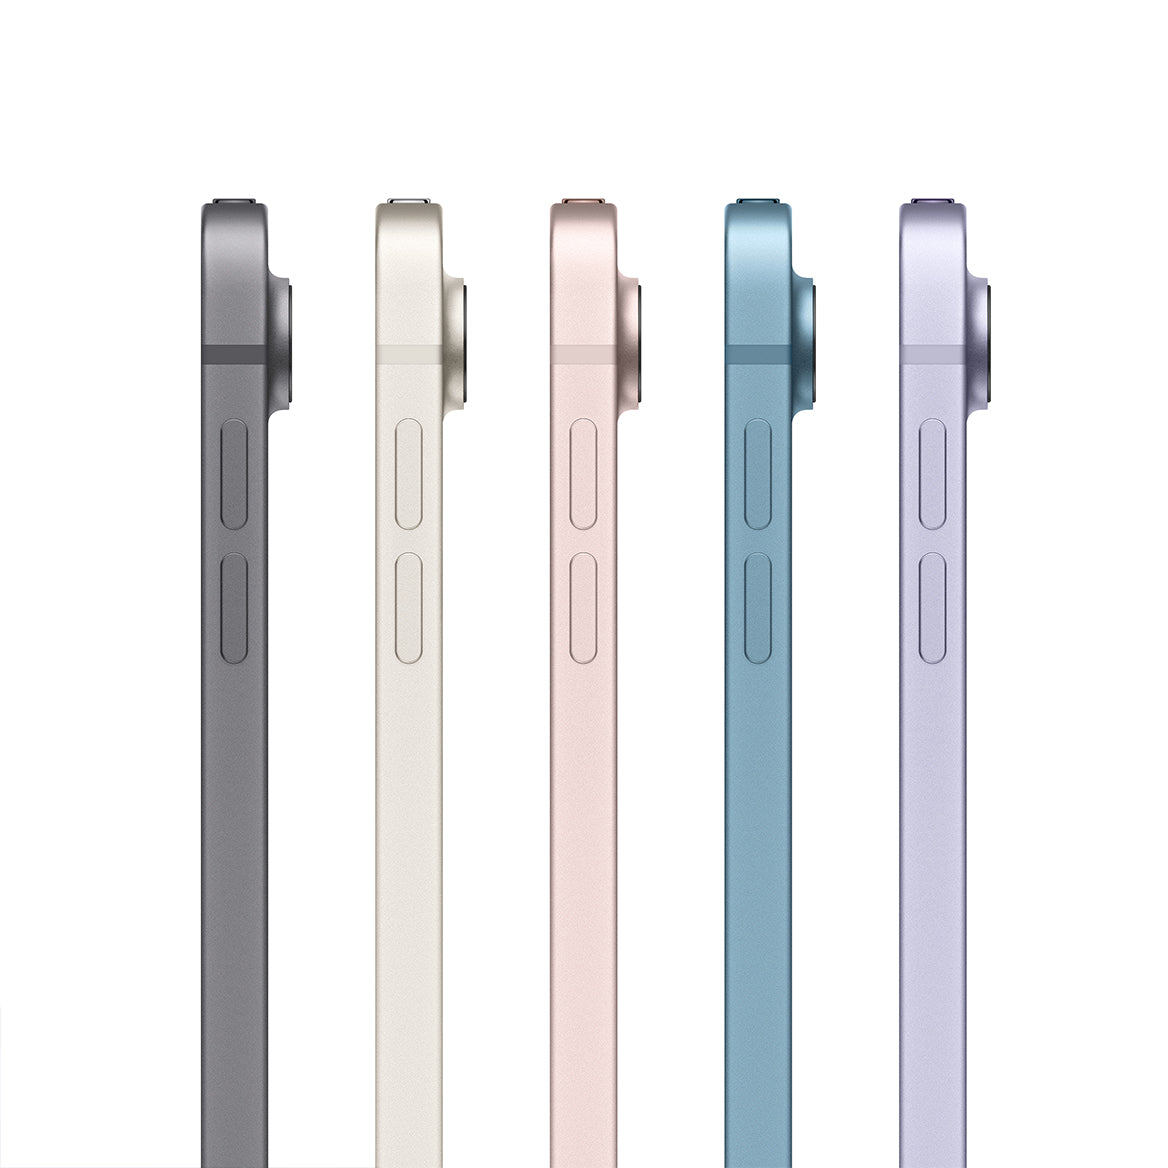 iPad Air 10.9 inci Gen 5 all colors 5